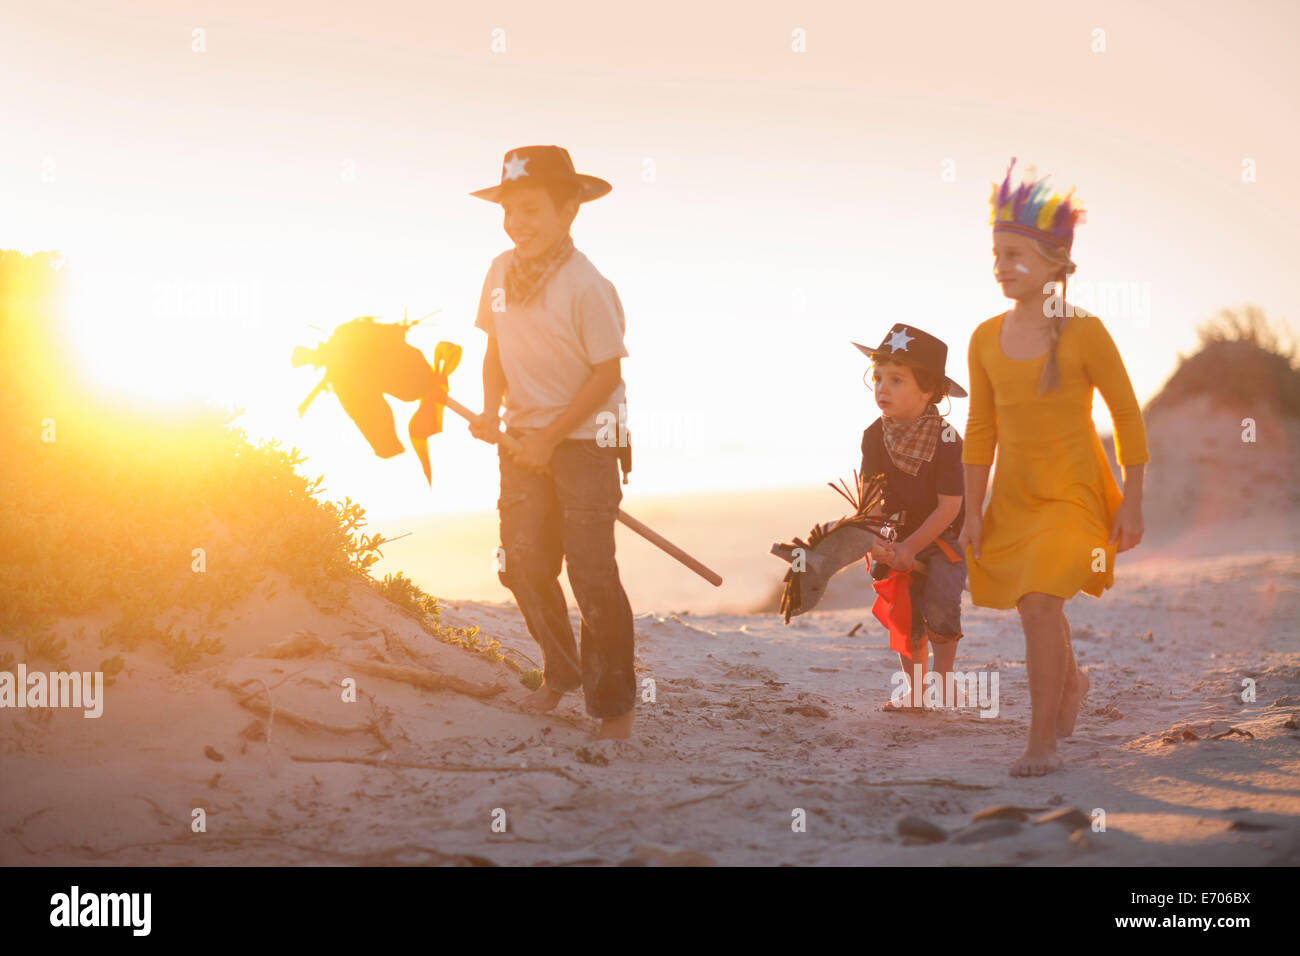 Drei Kinder, verkleidet als Indianer und Cowboys in Sanddünen Stockfoto